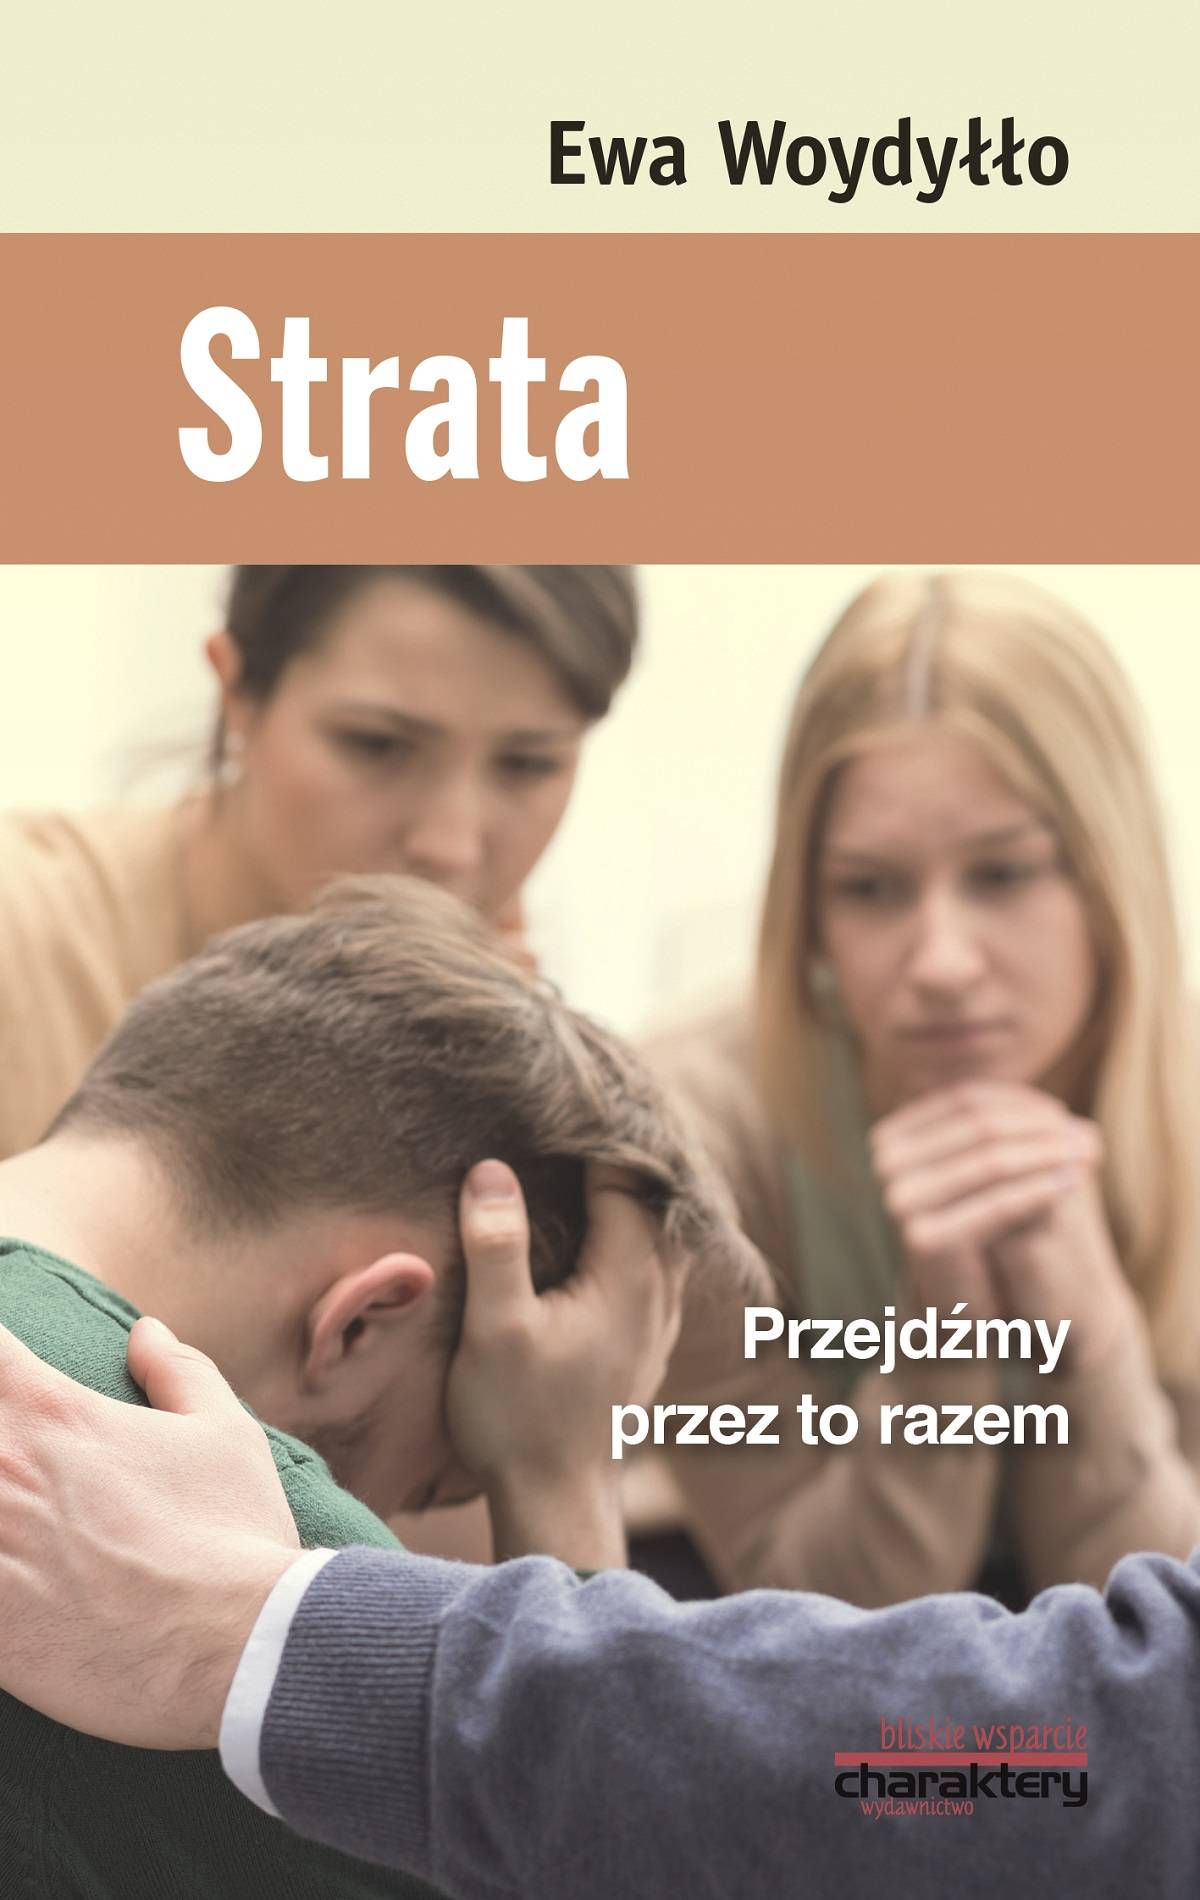 Okładka książki Strata (fot. materiały prasowe)